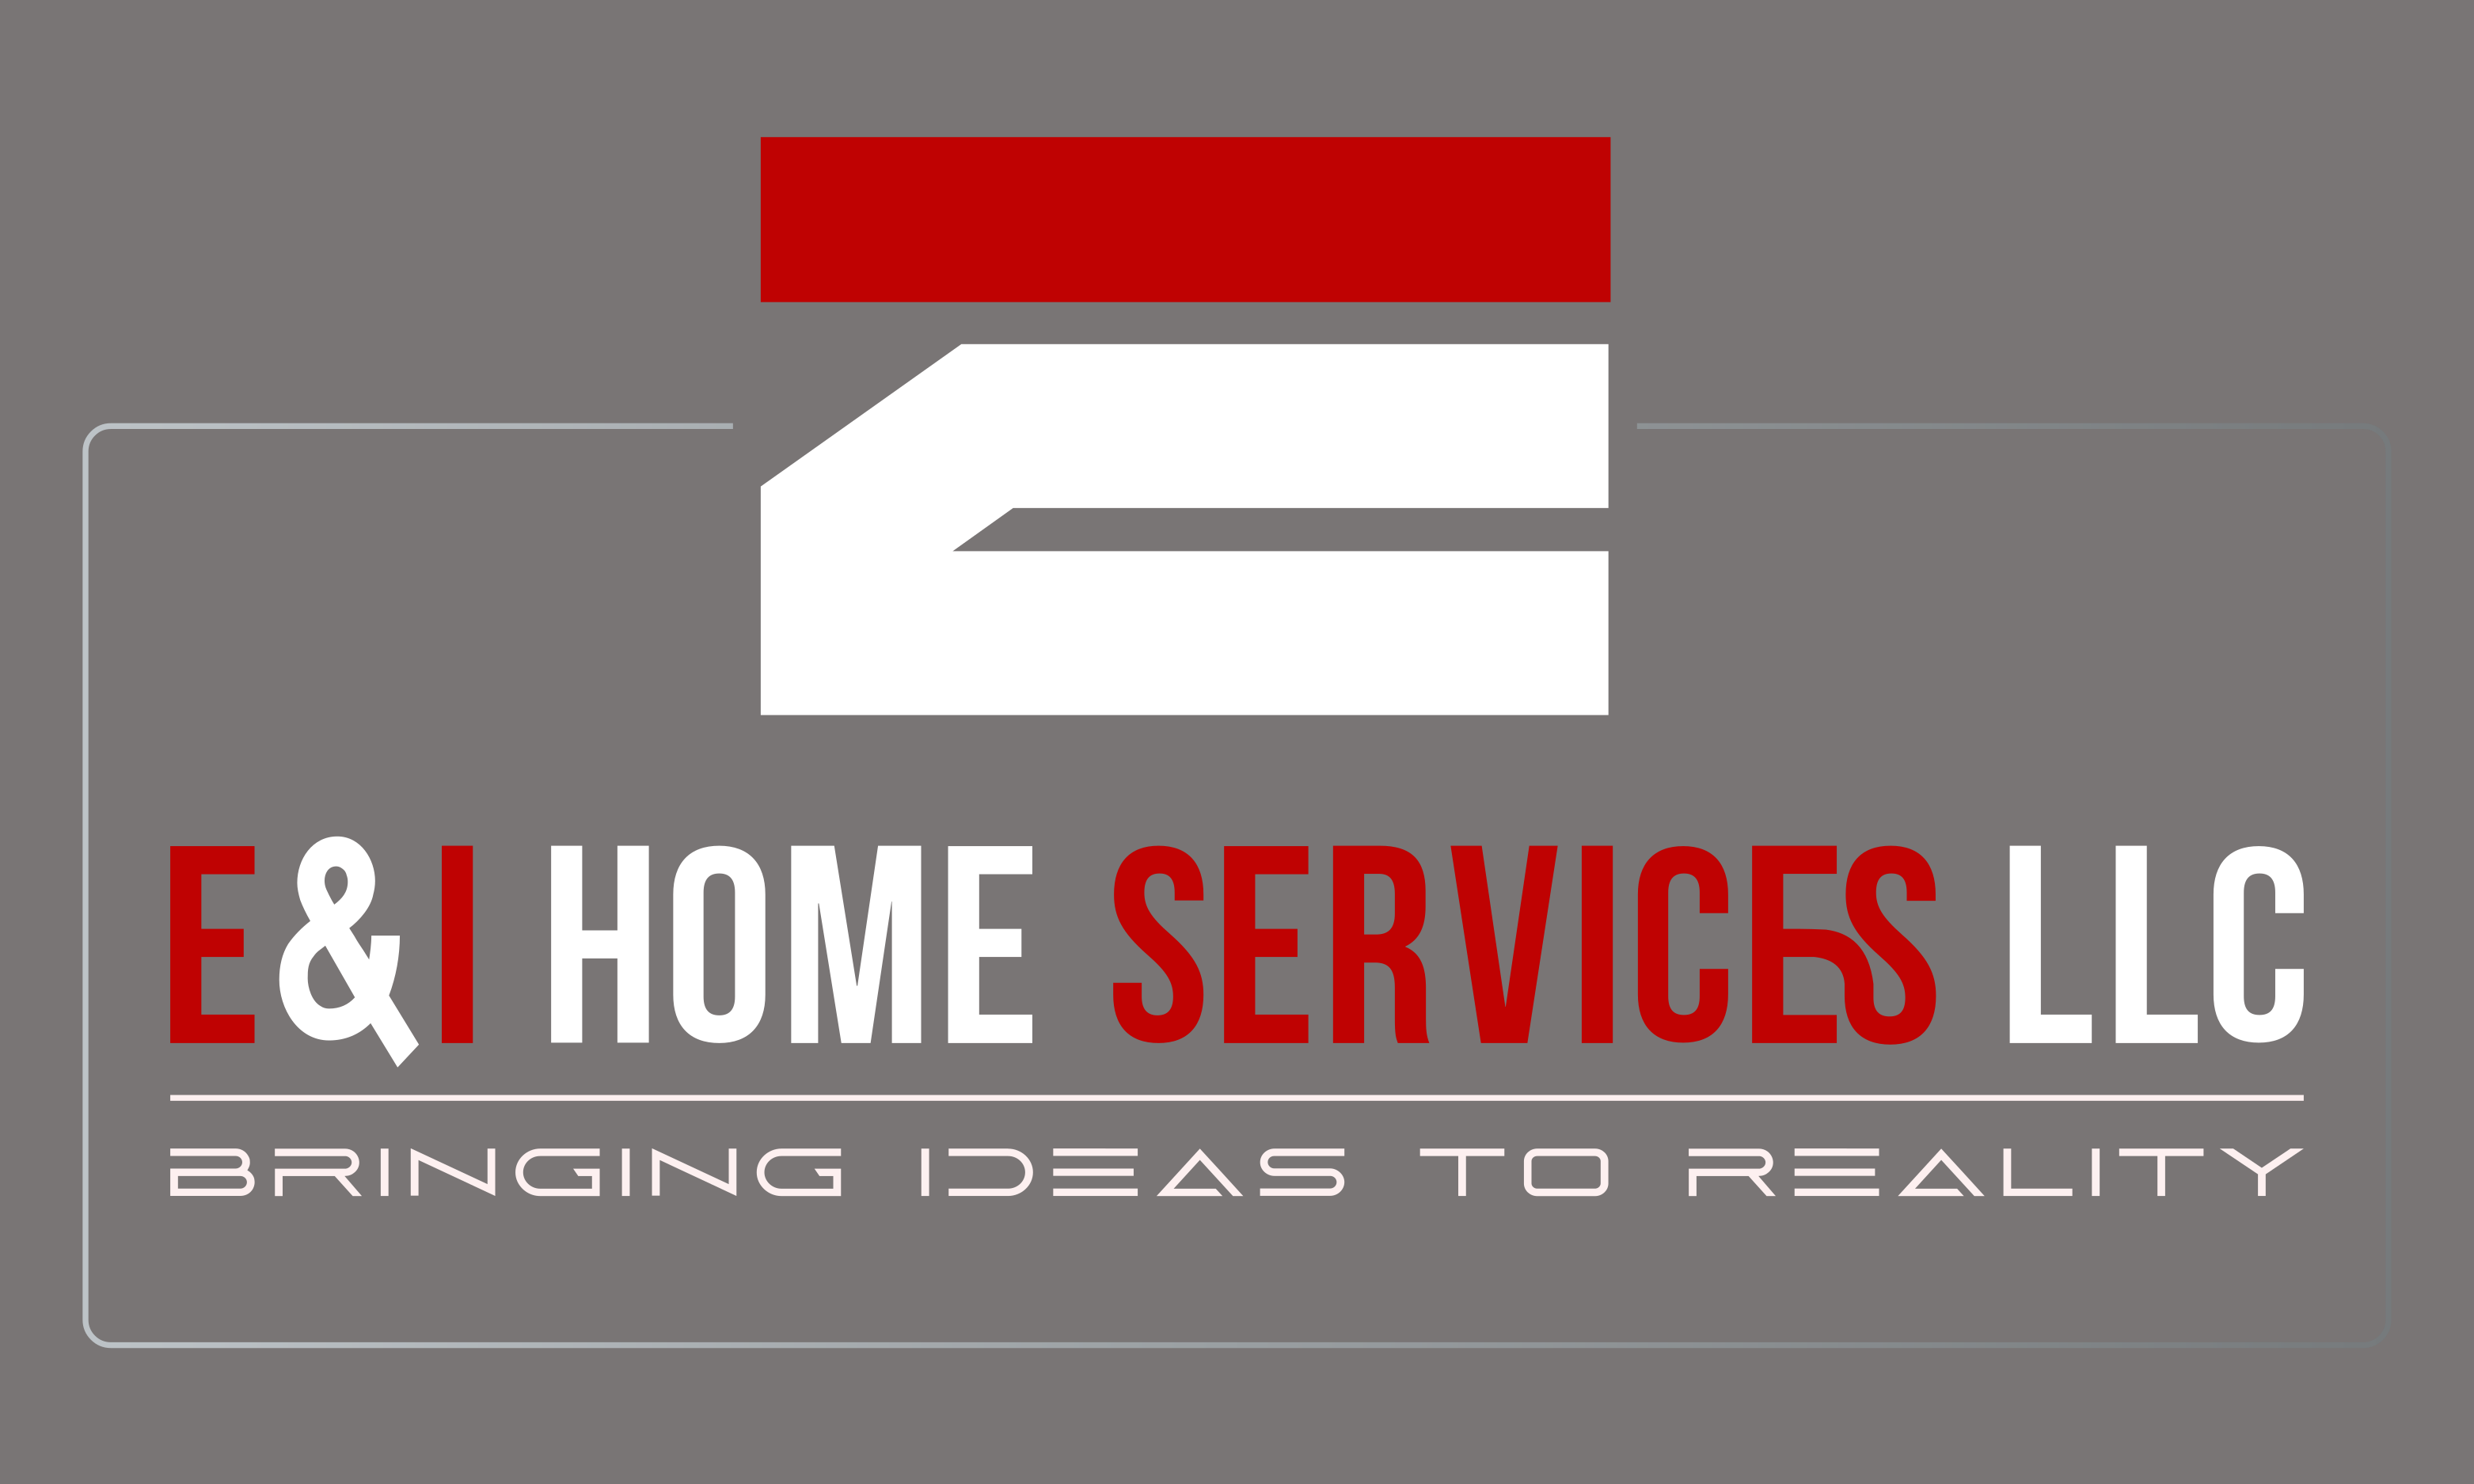 E&I Home Services LLC